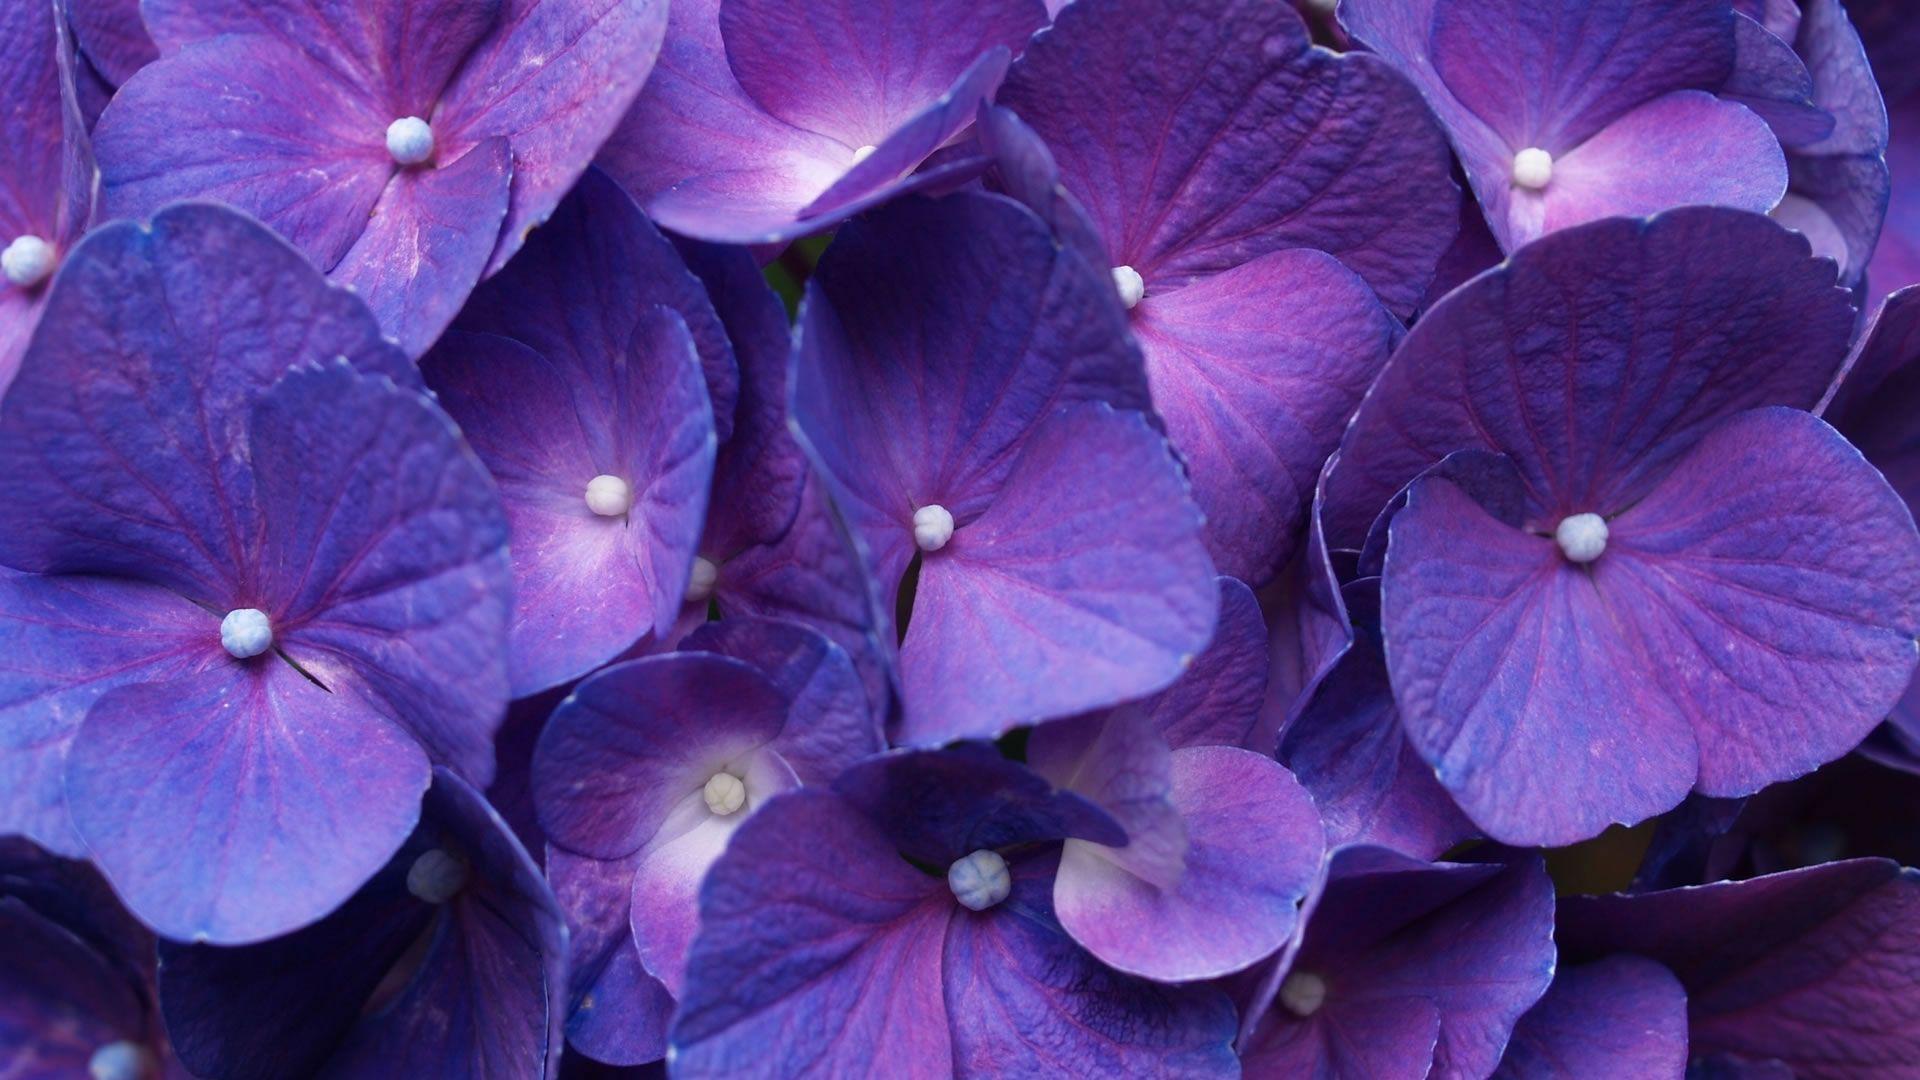 Wallpaper For > Purple Flower Wallpaper For Desktop